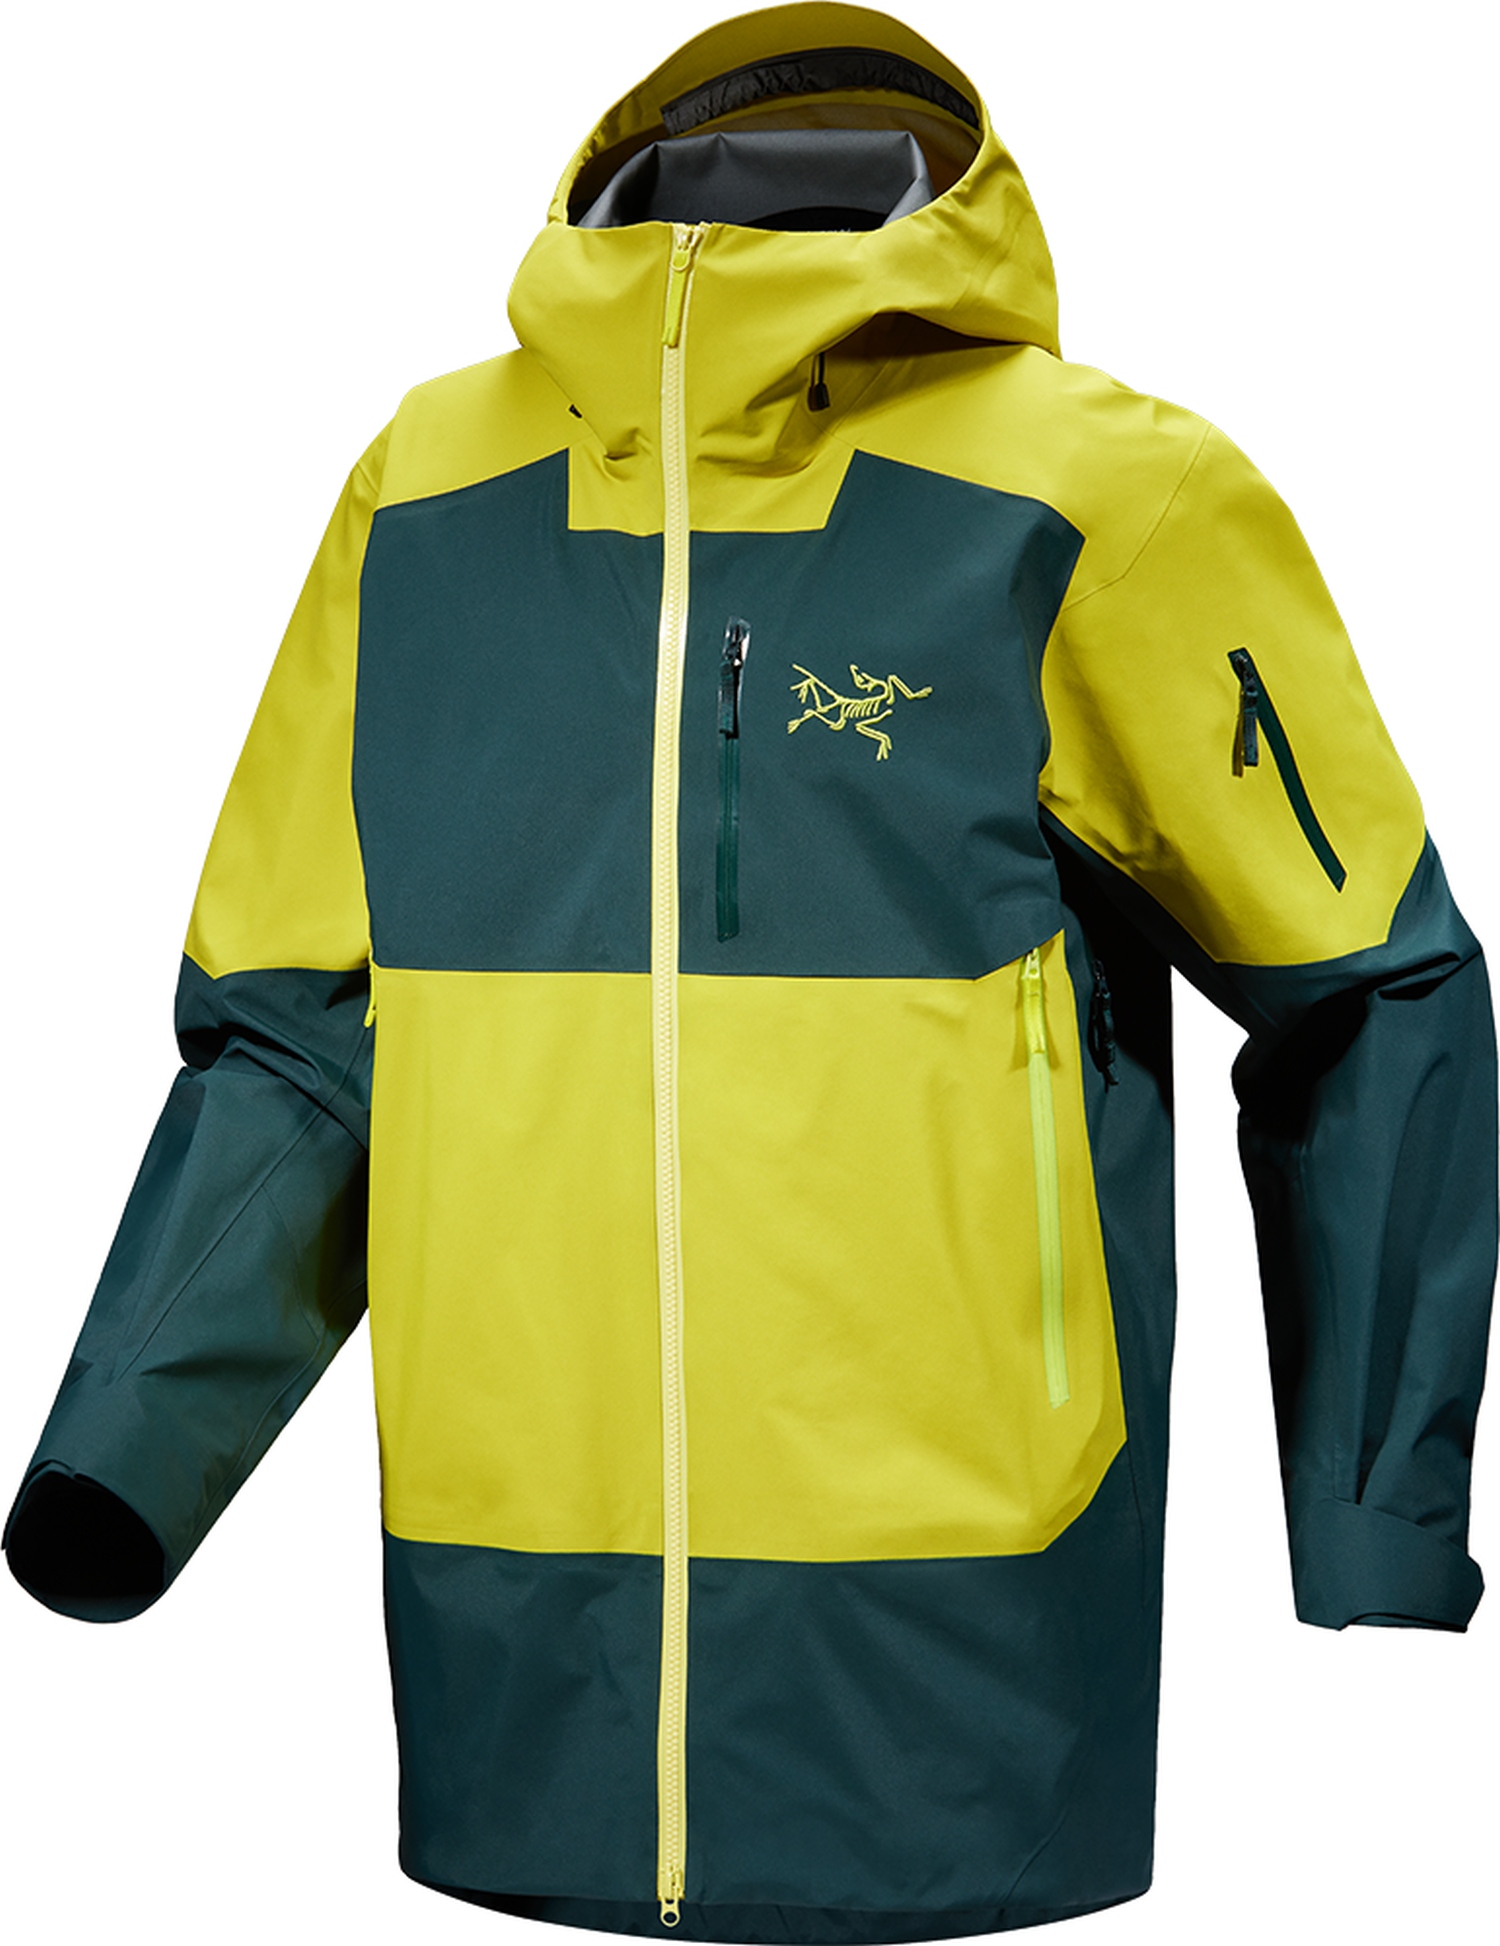 Arcteryx Sabre SV jacket